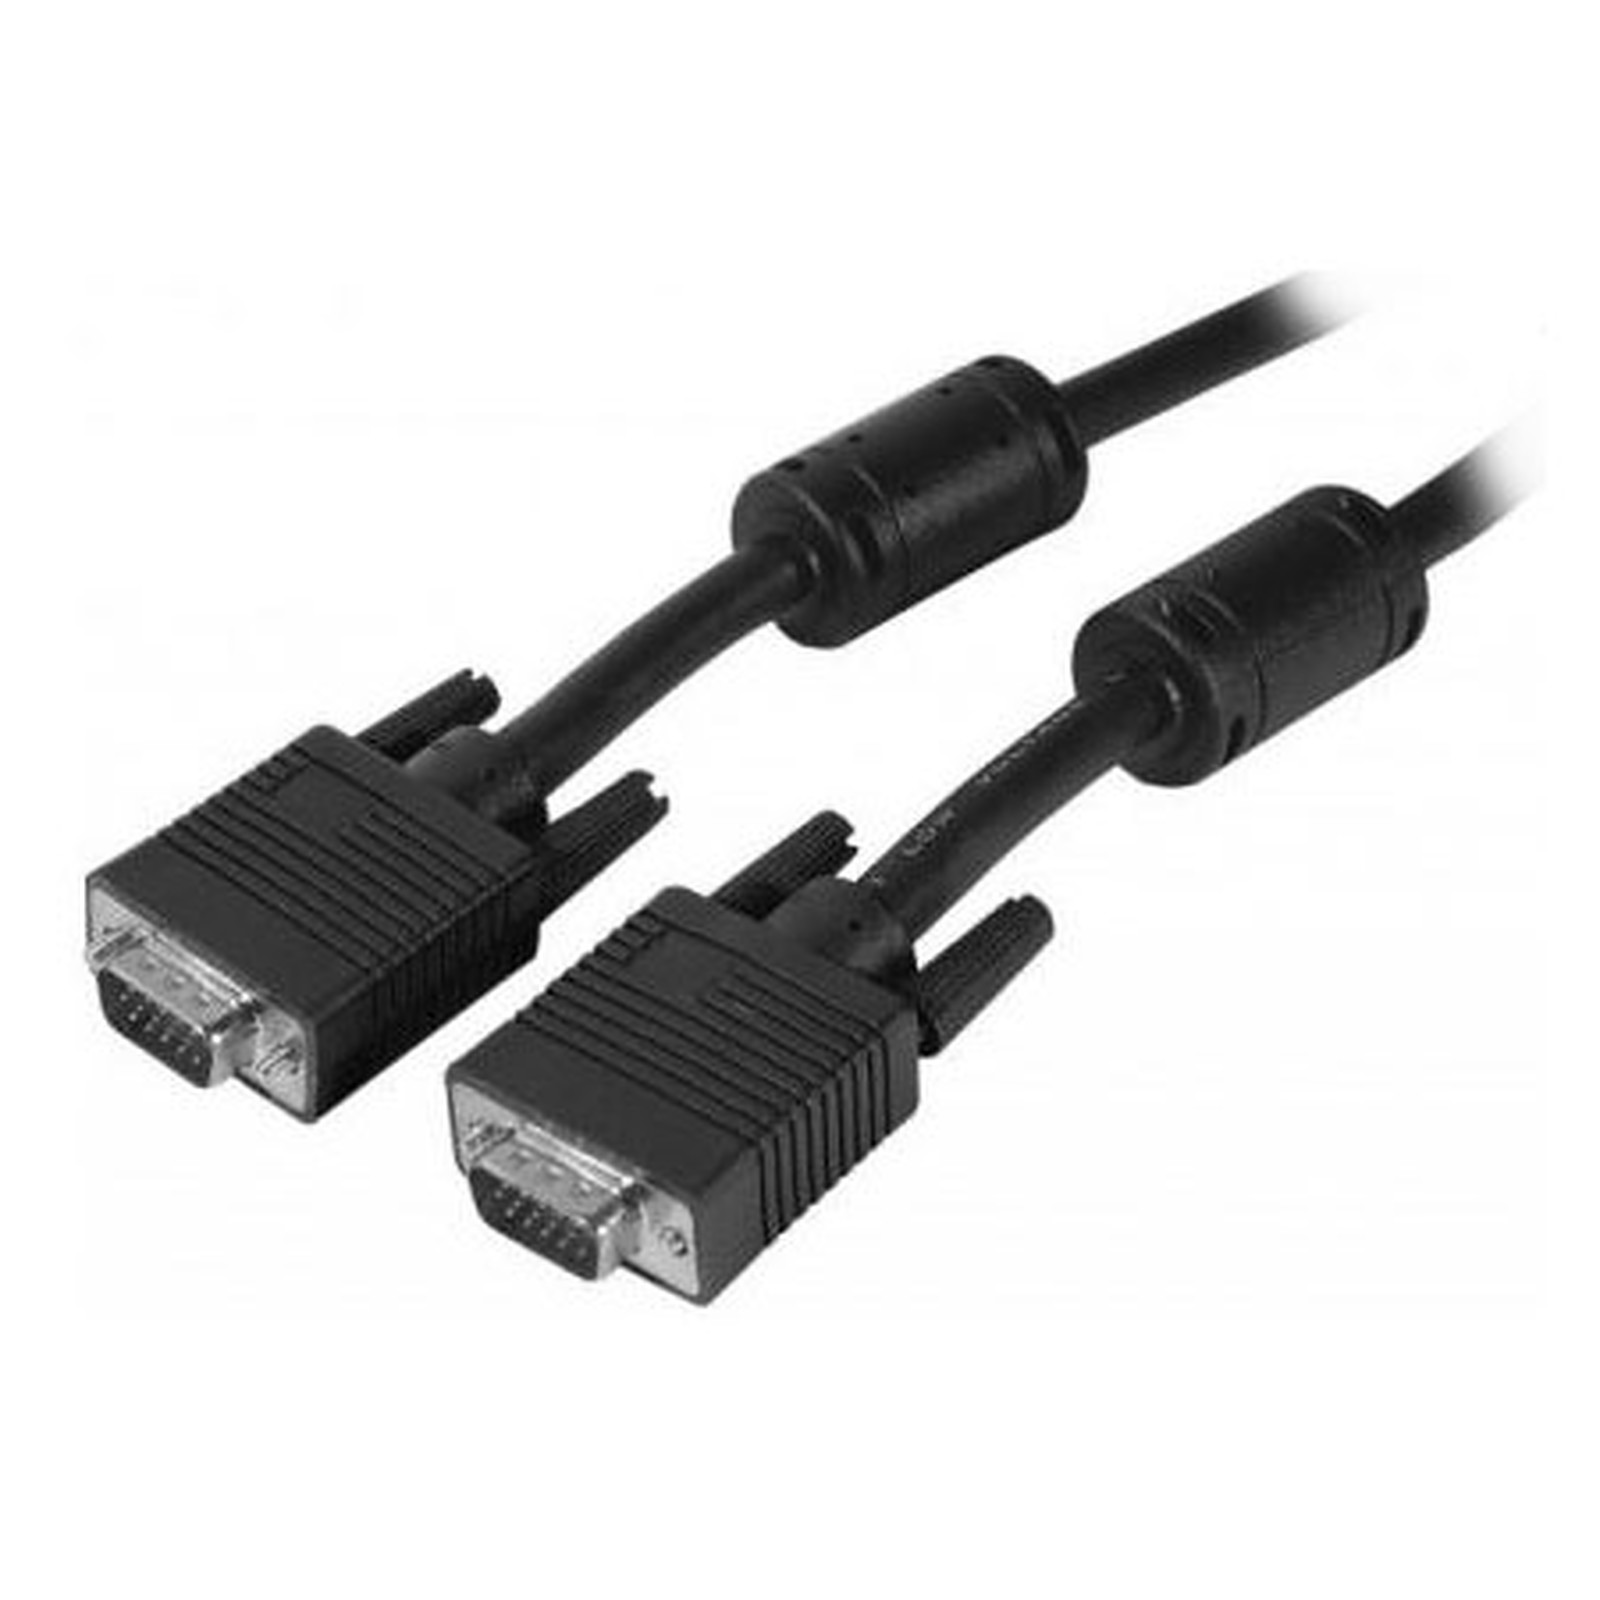 Cable VGA HD male / male (5 mètres) - VGA Generique